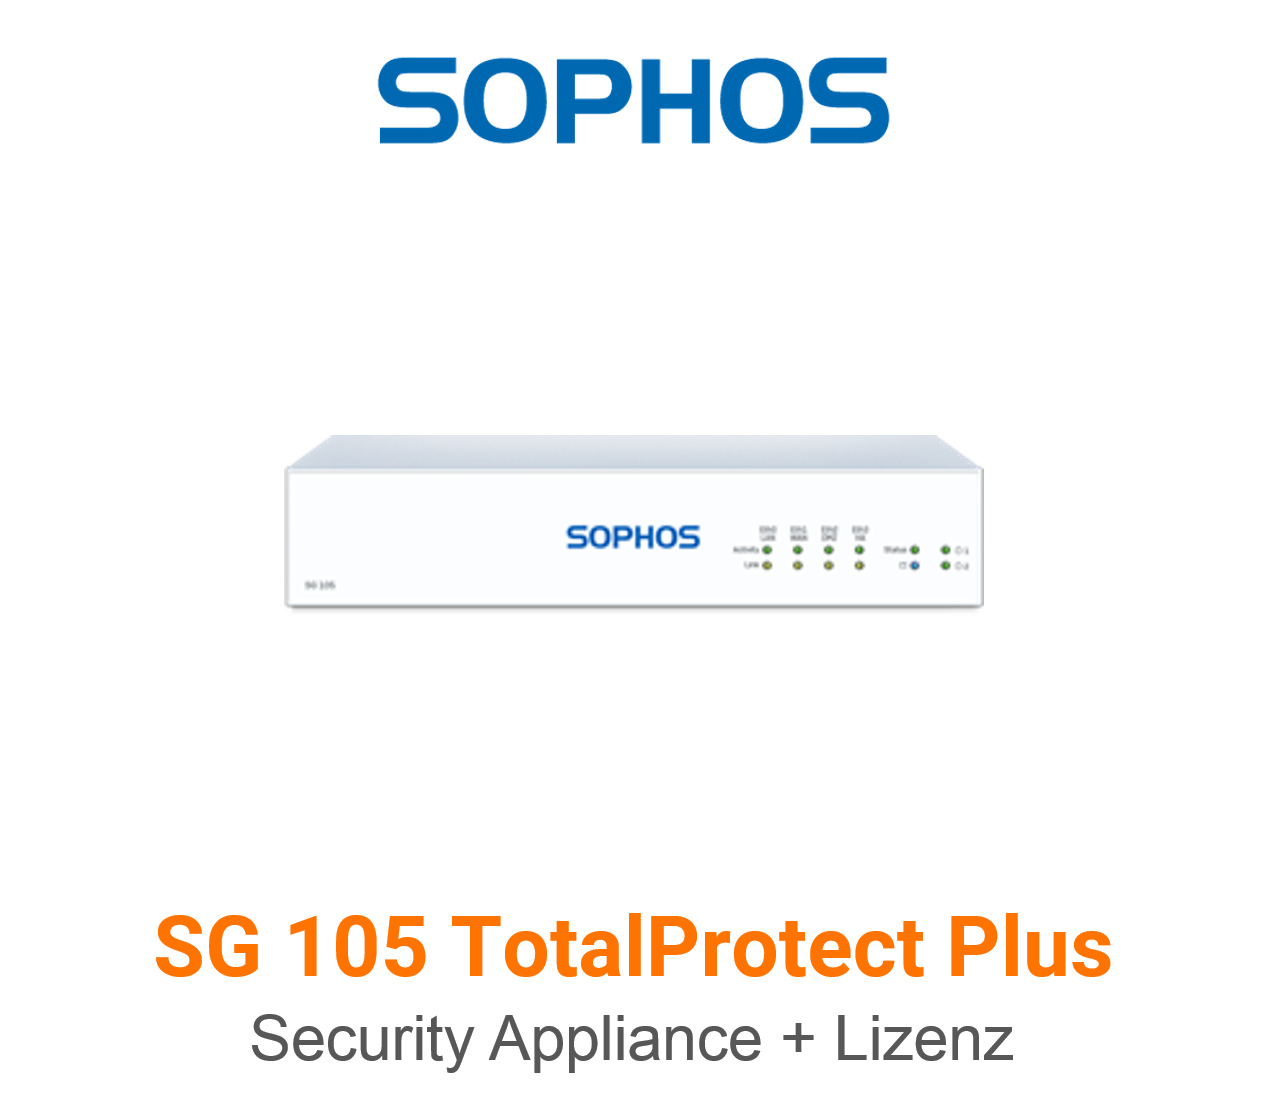 Sophos SG 105 TotalProtect Plus Bundle (Hardware + Lizenz)